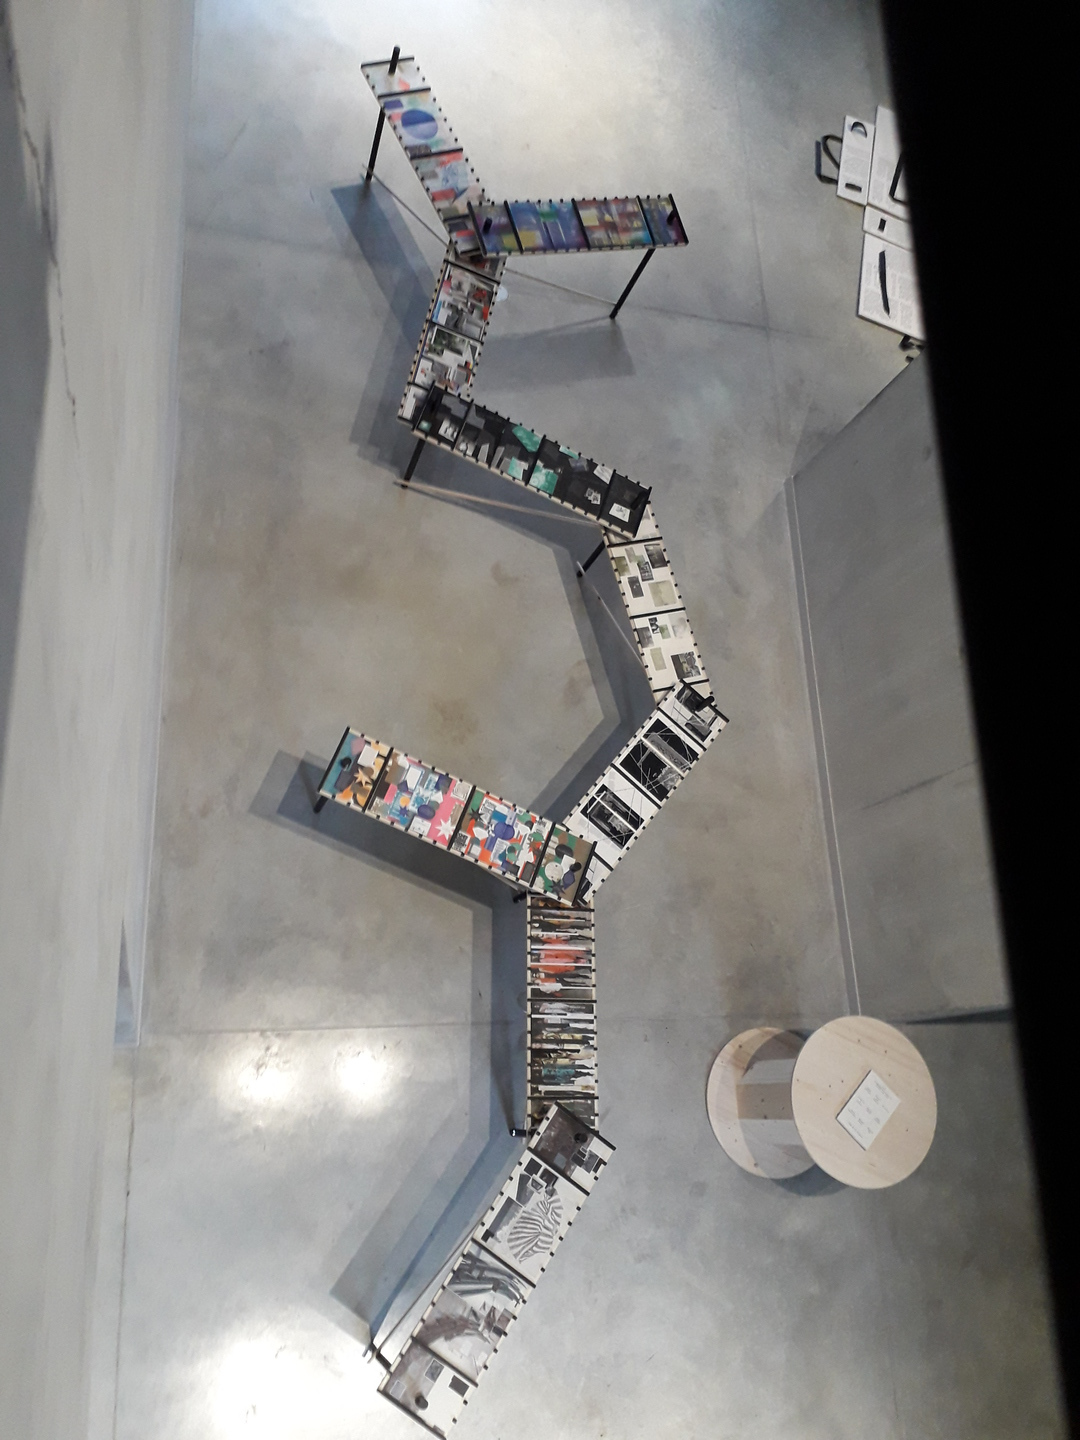 Image 18 : Vue de dessus d'une installation de tables sur lesquelles sont exposées de nombreux ouvrages